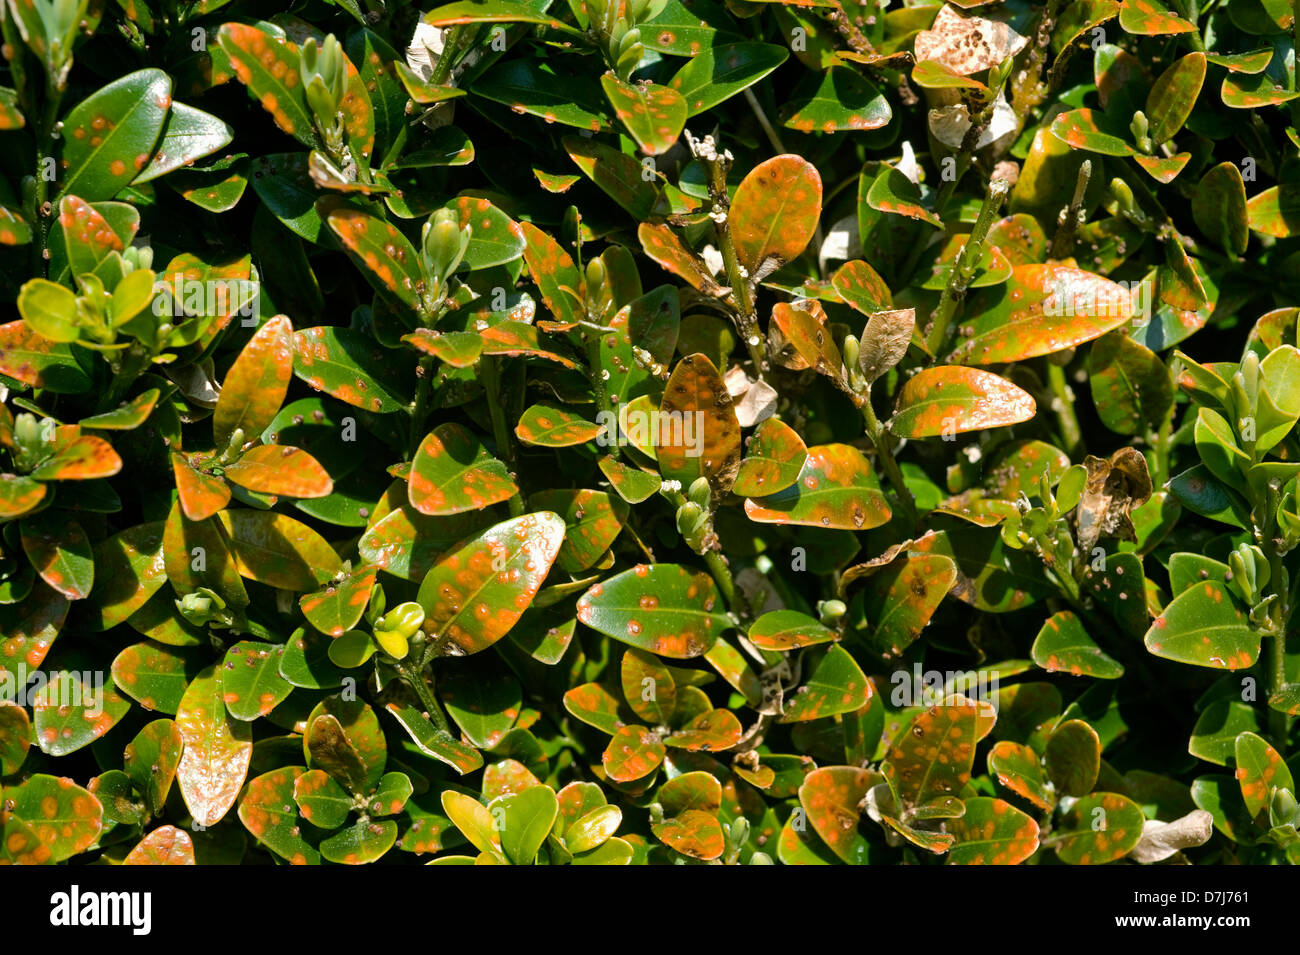 Box, Rost, Puccia Buxi, Pusteln auf der oberen Fläche des erkrankten Parterres hedge-Blätter Stockfoto